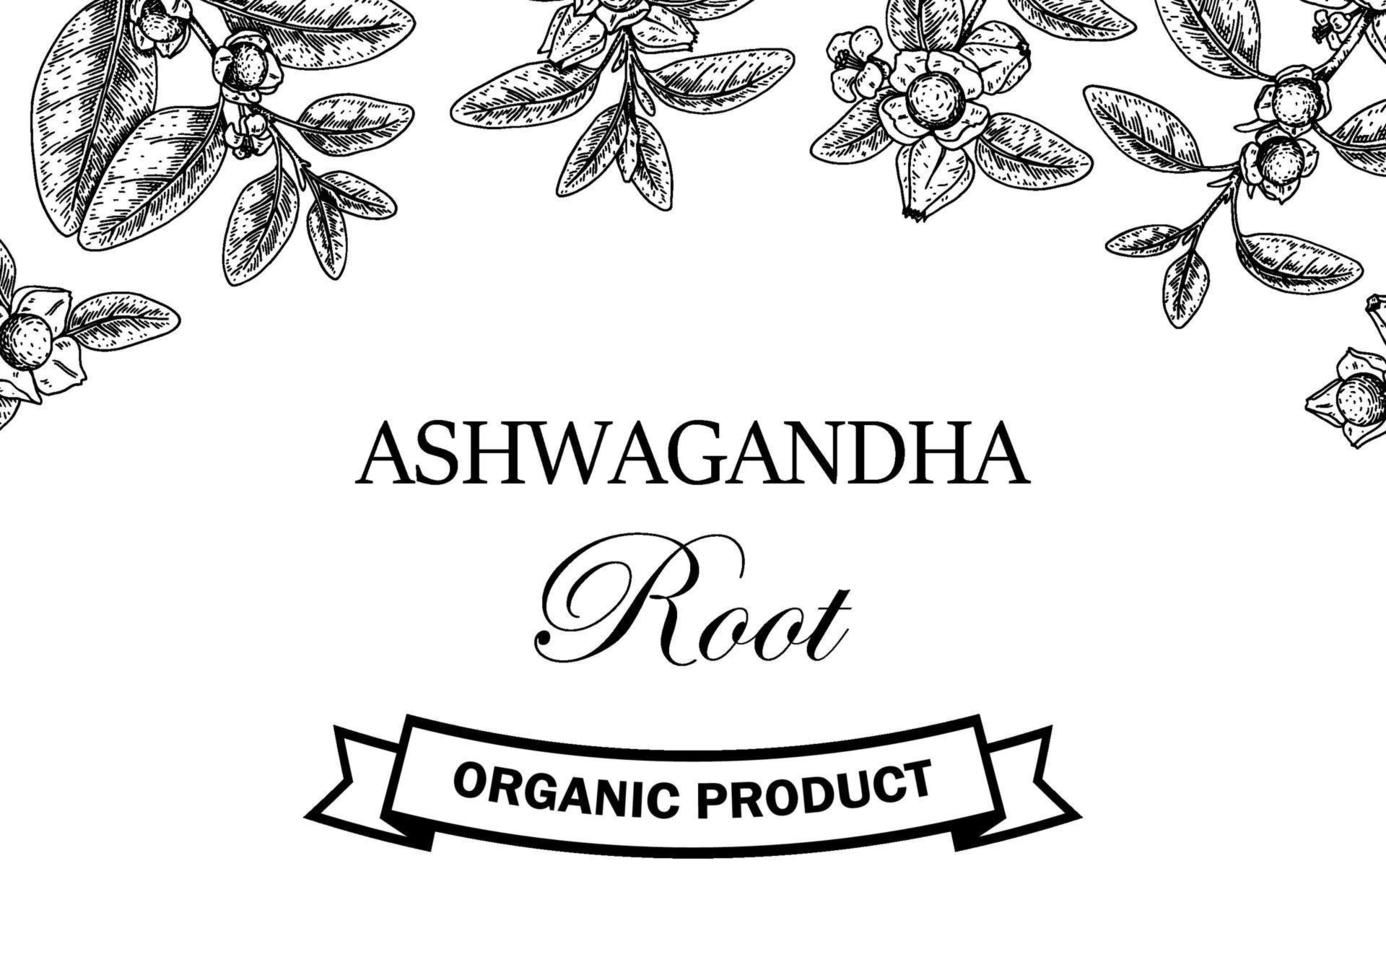 Dibujado a mano diseño ashwagandha horizontal con ramas y bayas aisladas sobre fondo blanco. ilustración vectorial en estilo boceto. vector